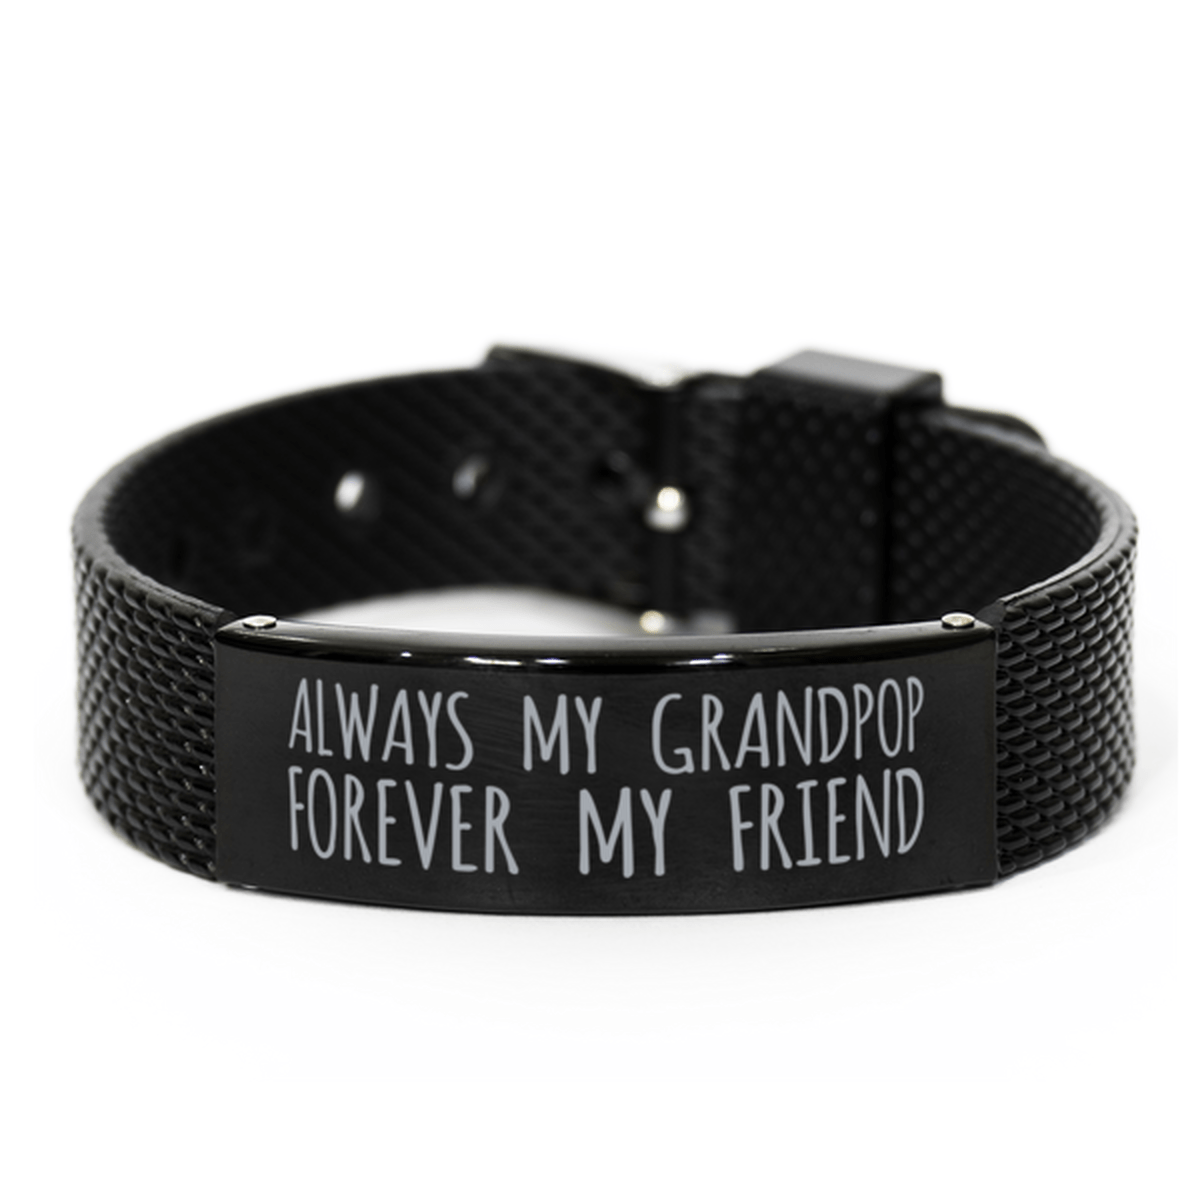 Inspirational Grandpop Black Shark Mesh Bracelet, Always My Grandpop Forever My Friend, Best Birthday Gifts for Family Friends